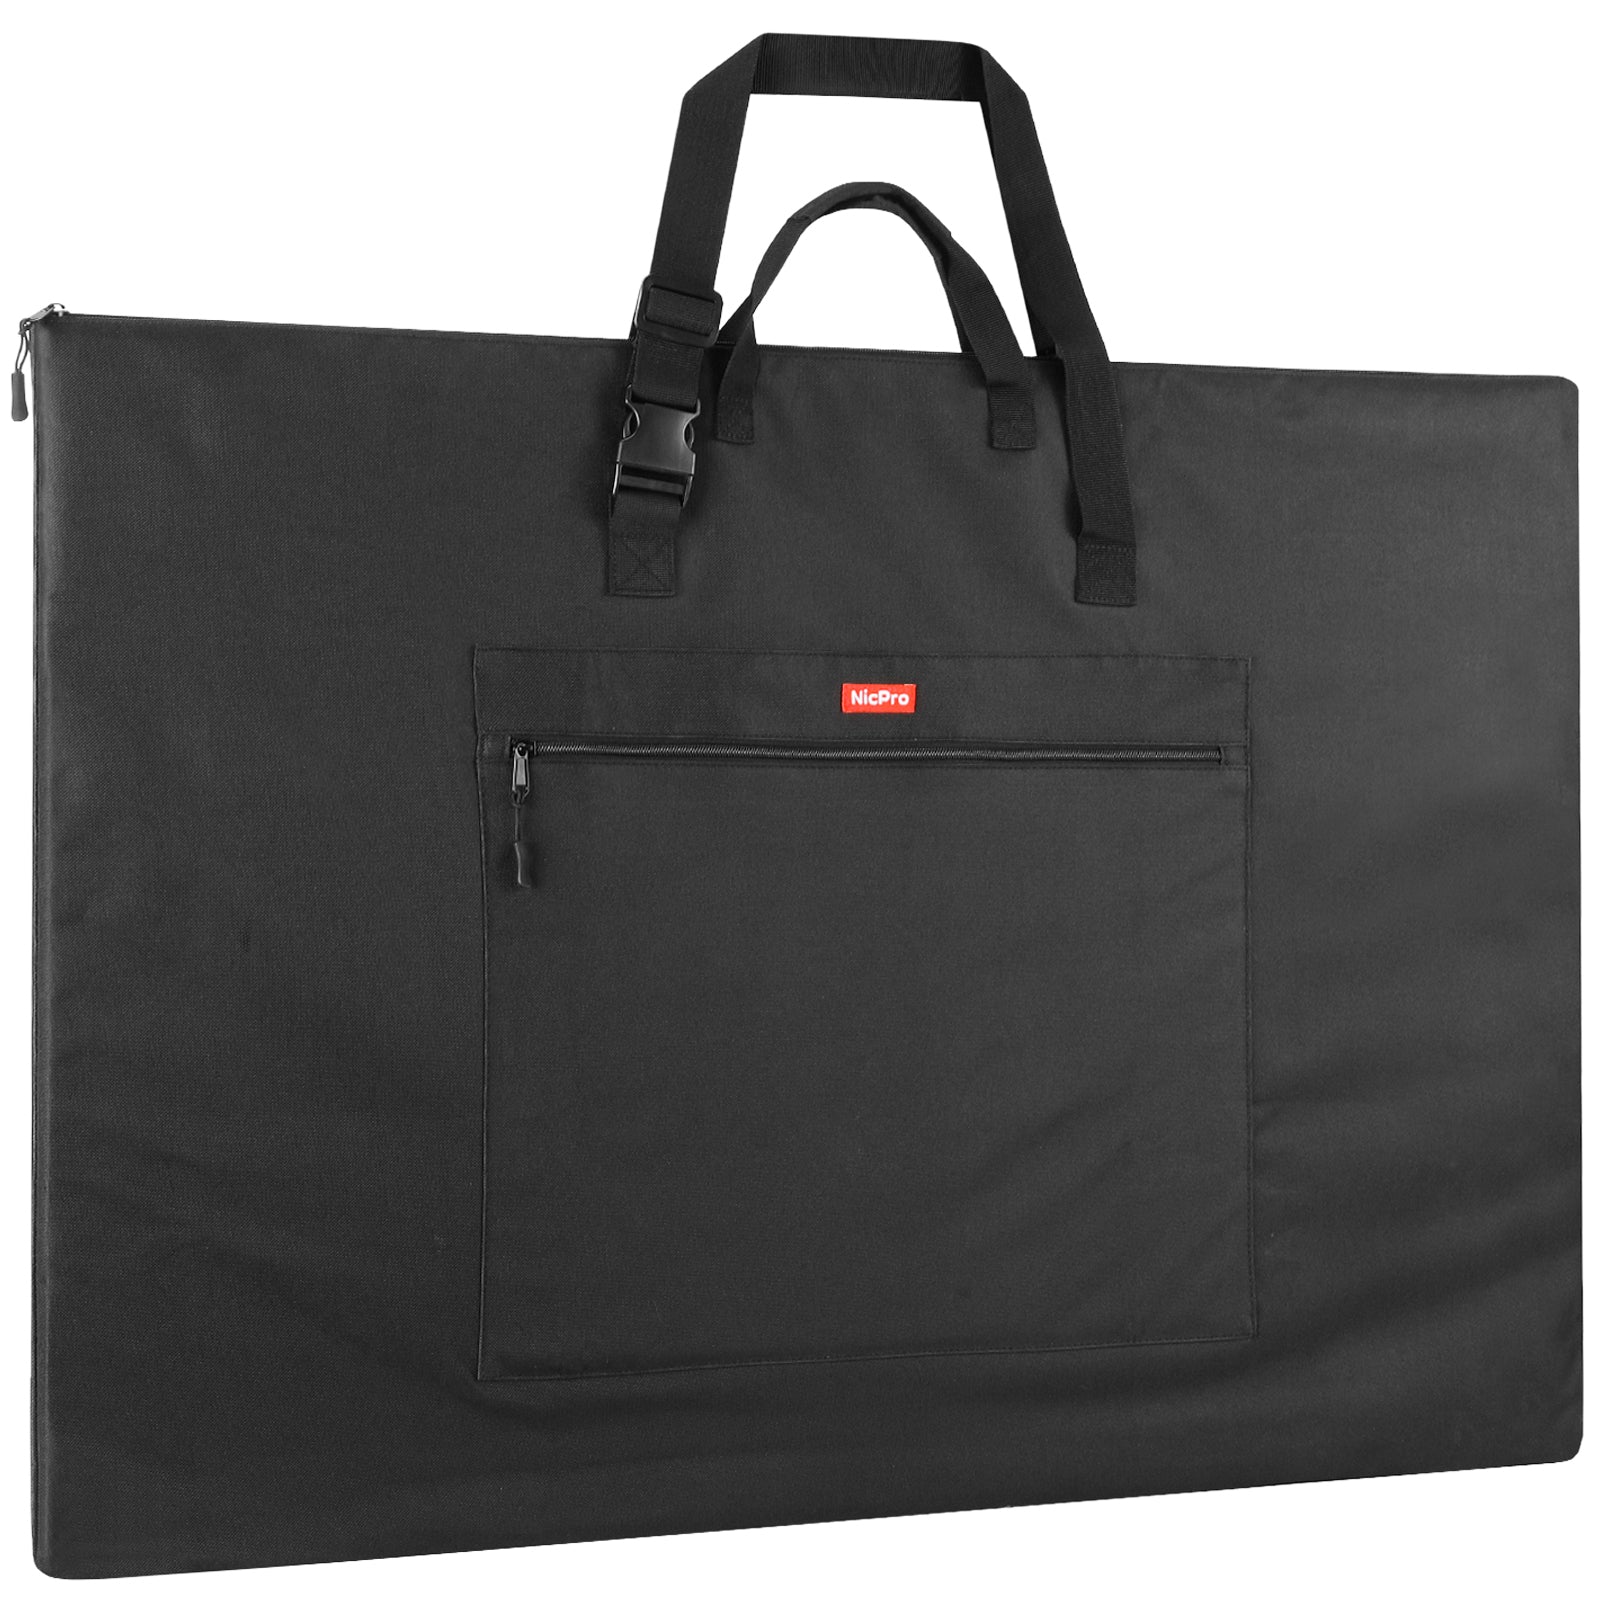 Nicpro Light Weight Art Portfolio Bag, 23 x 31 Inches Waterproof Nylon